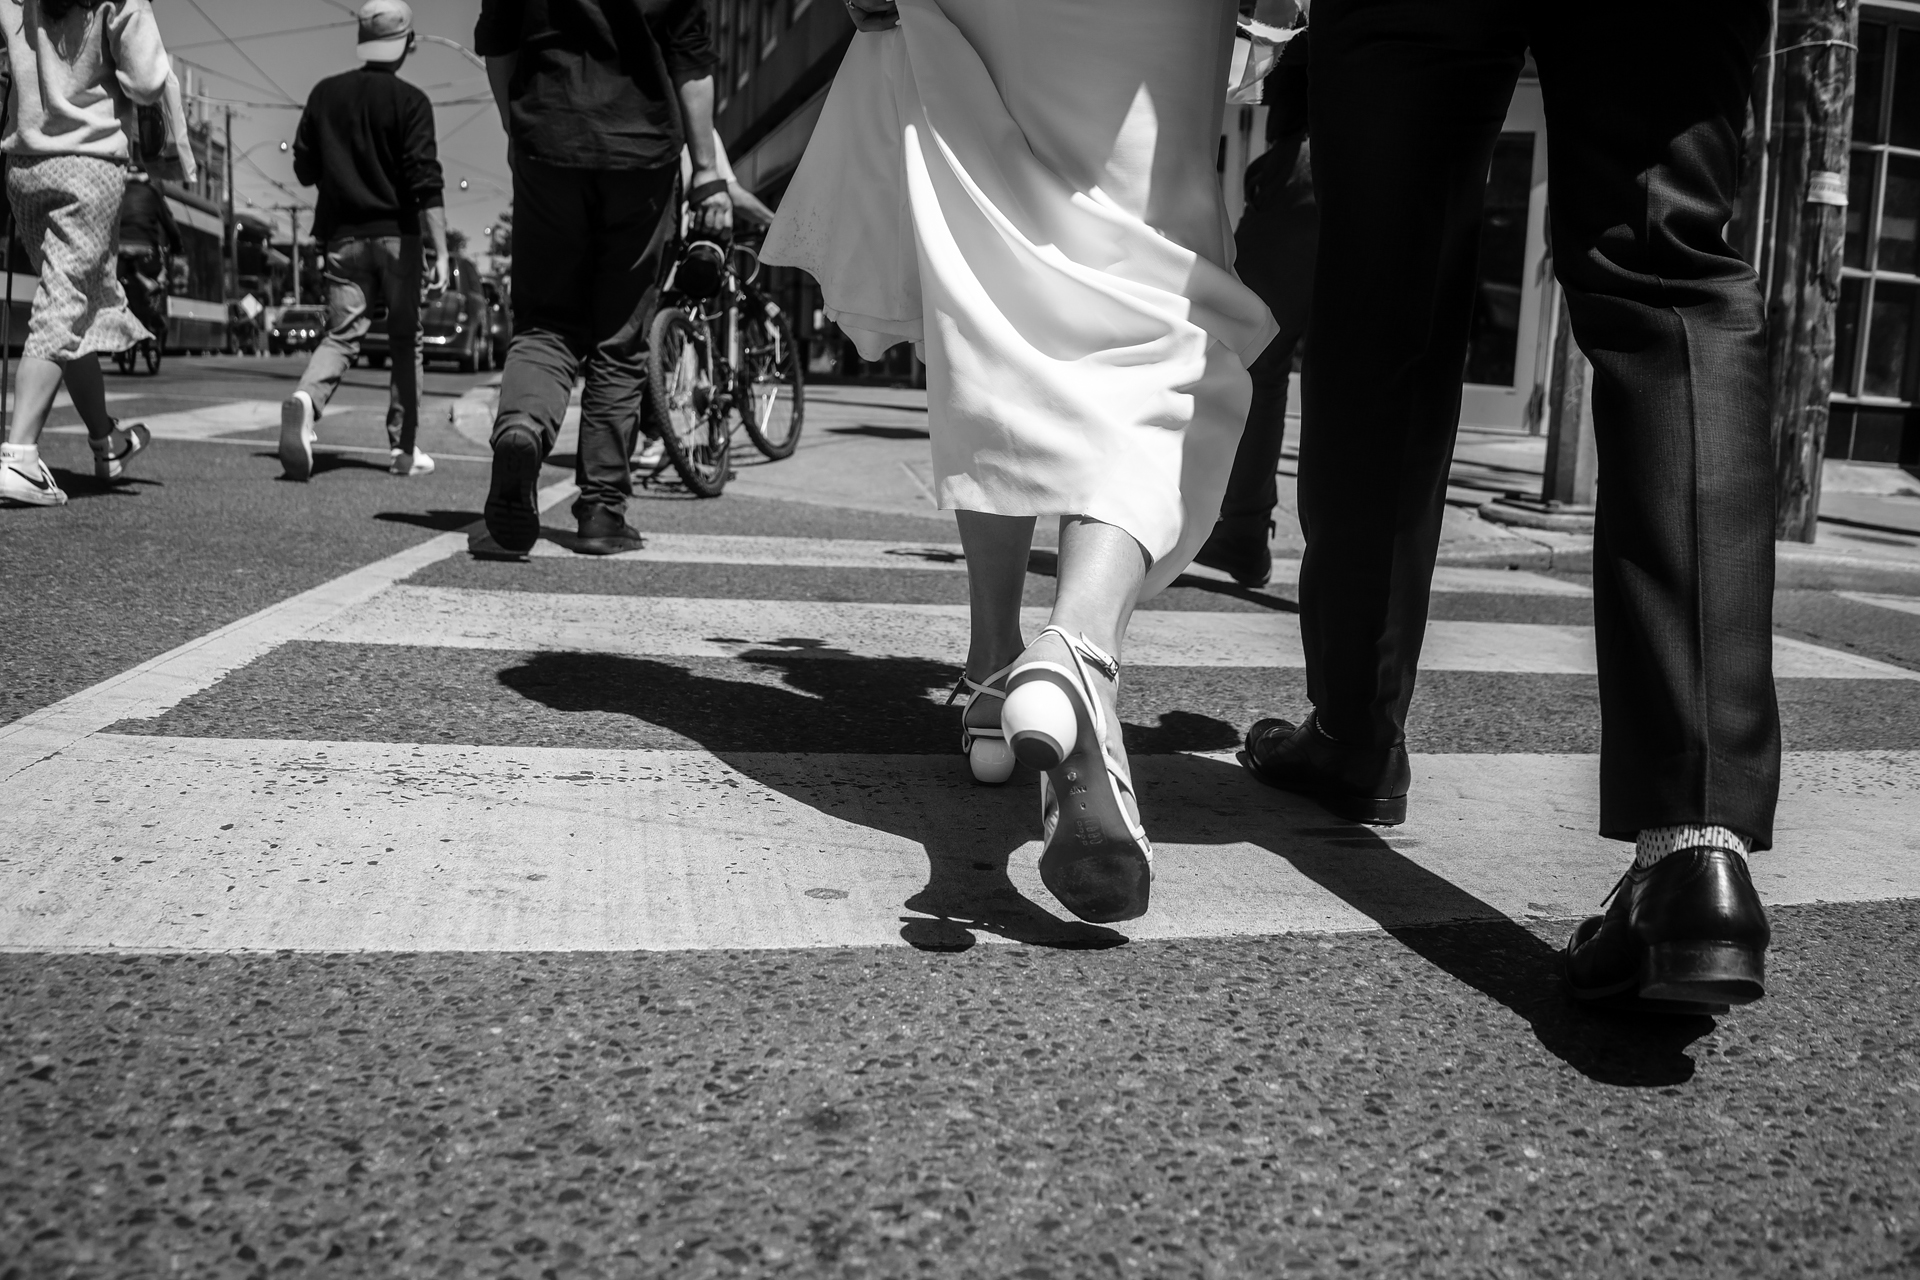 WEDDING COUPLE WALKING ON THE STREET